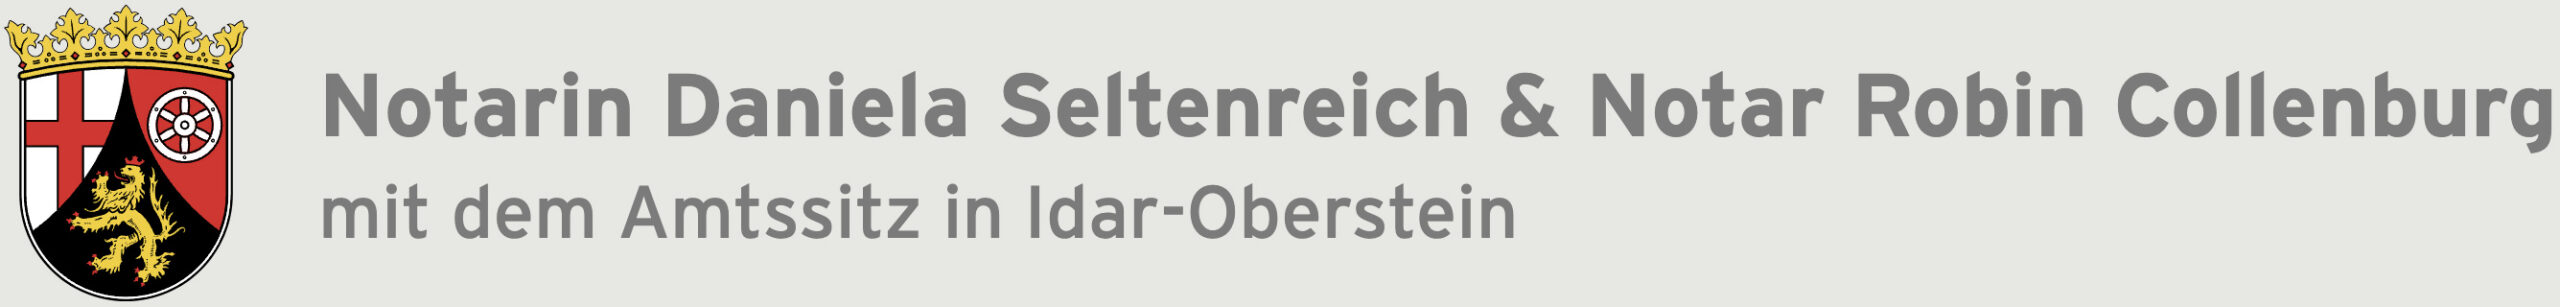 seltenreich-collenburg_logo